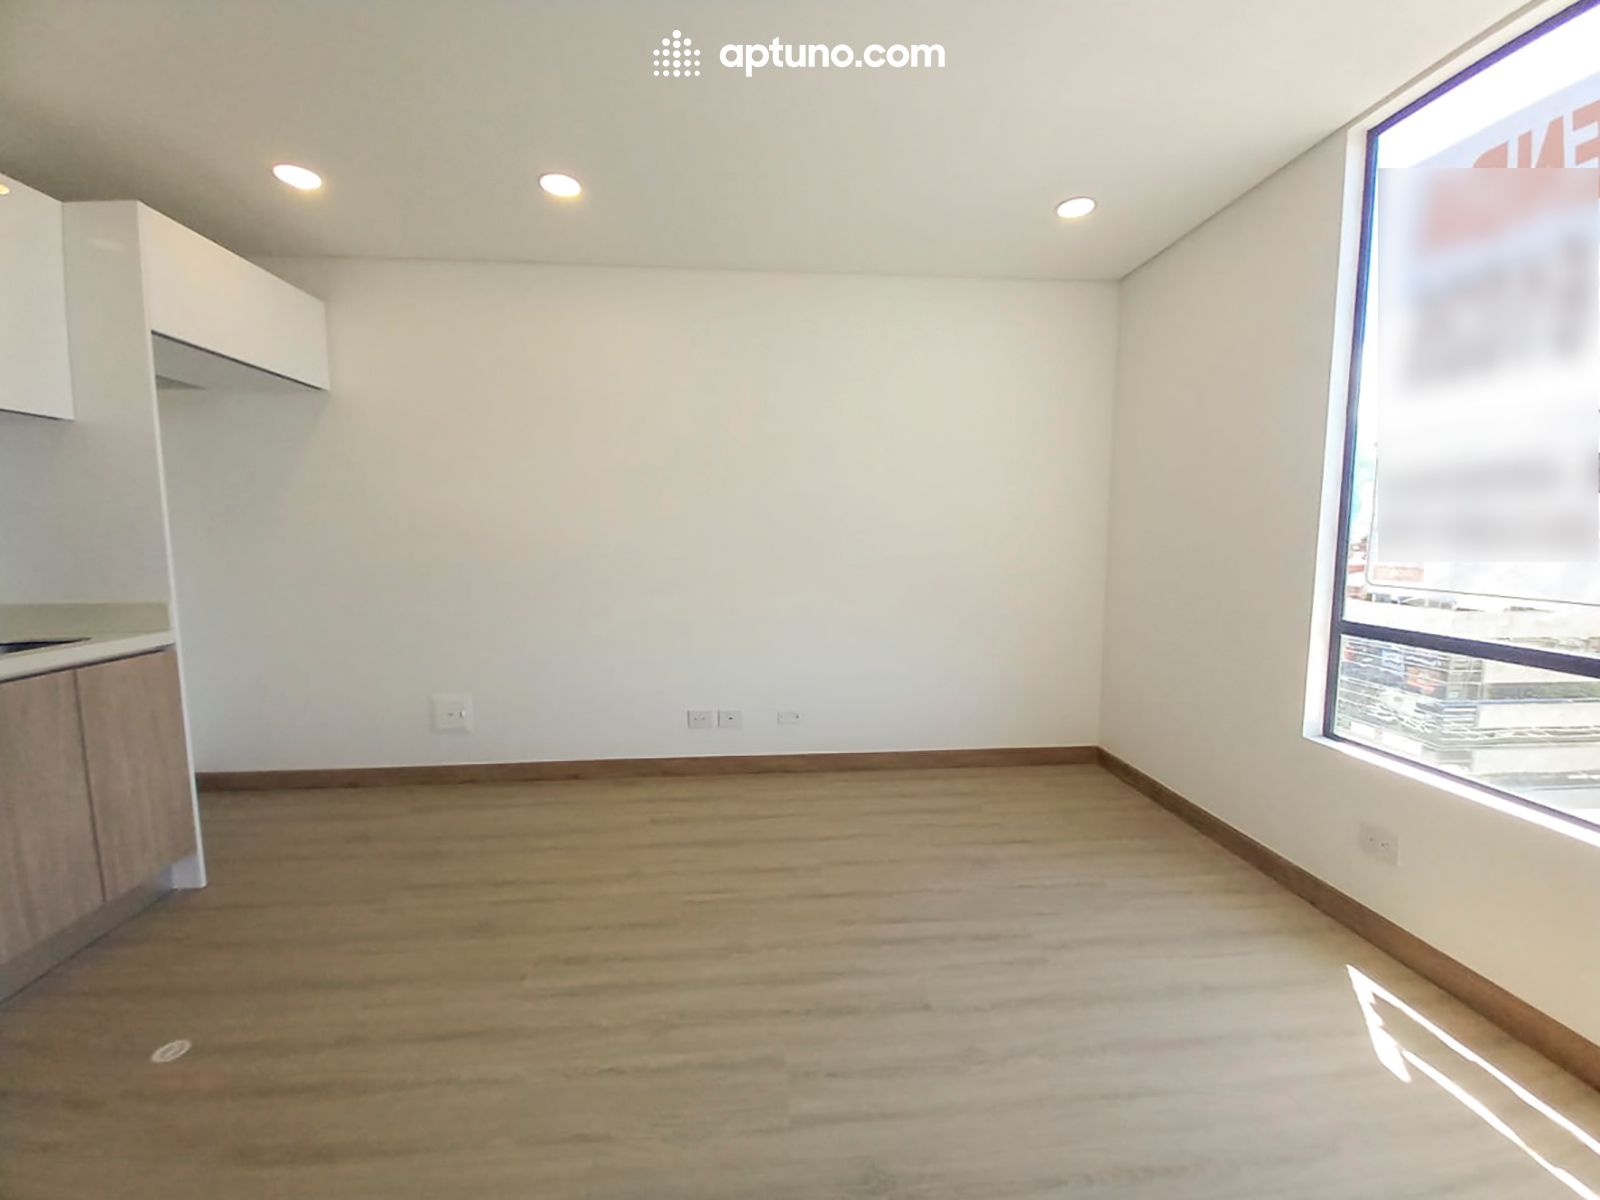 Apartamento en arriendo Santa Bárbara Occidental 63 m² - $ 3.500.000,00